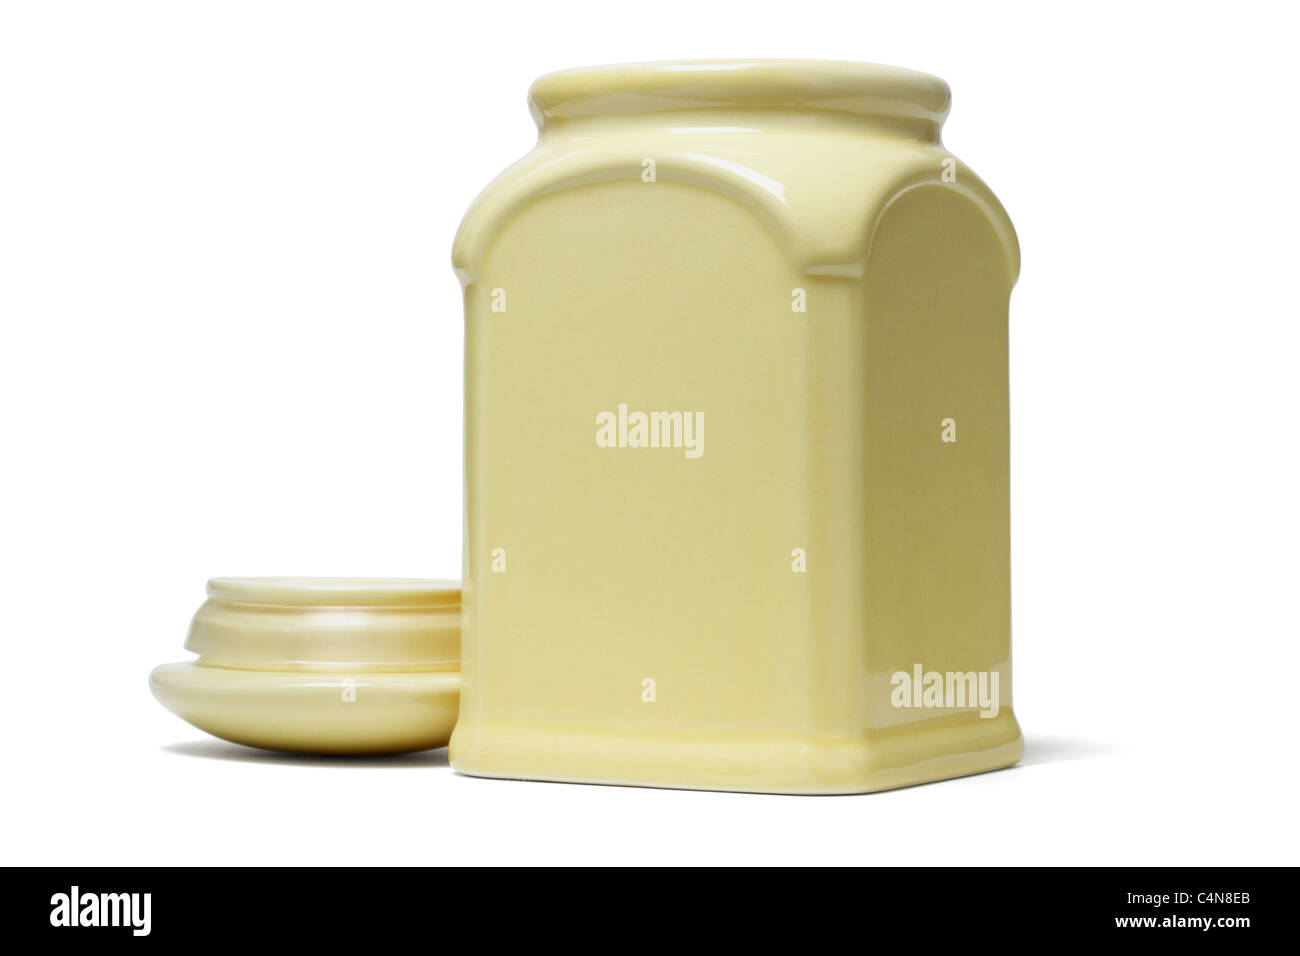 Offenen gelbe Keramik Behälter mit Deckel auf weißem Hintergrund Stockfoto